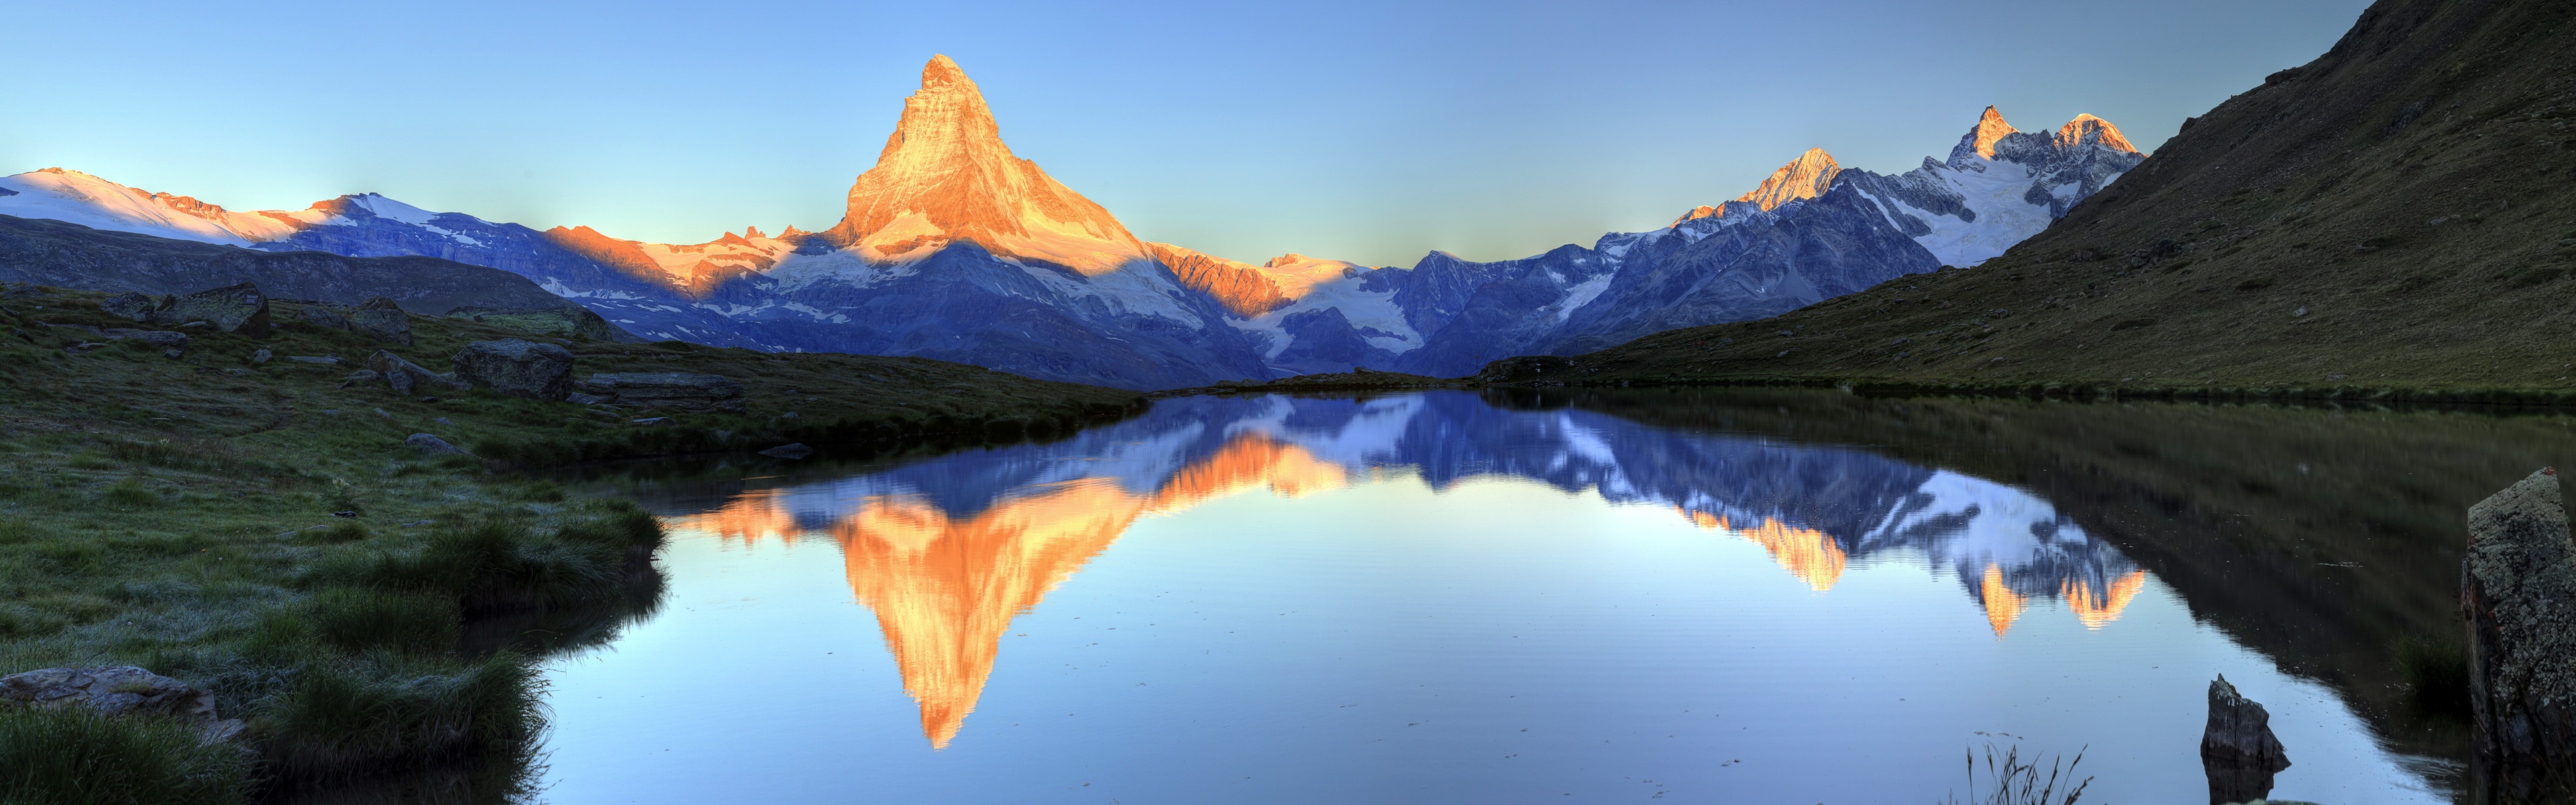 Windows 8 offiziellen Panorama Tapete, Wellen, Wälder, majestätische Berge #20 - 3840x1200